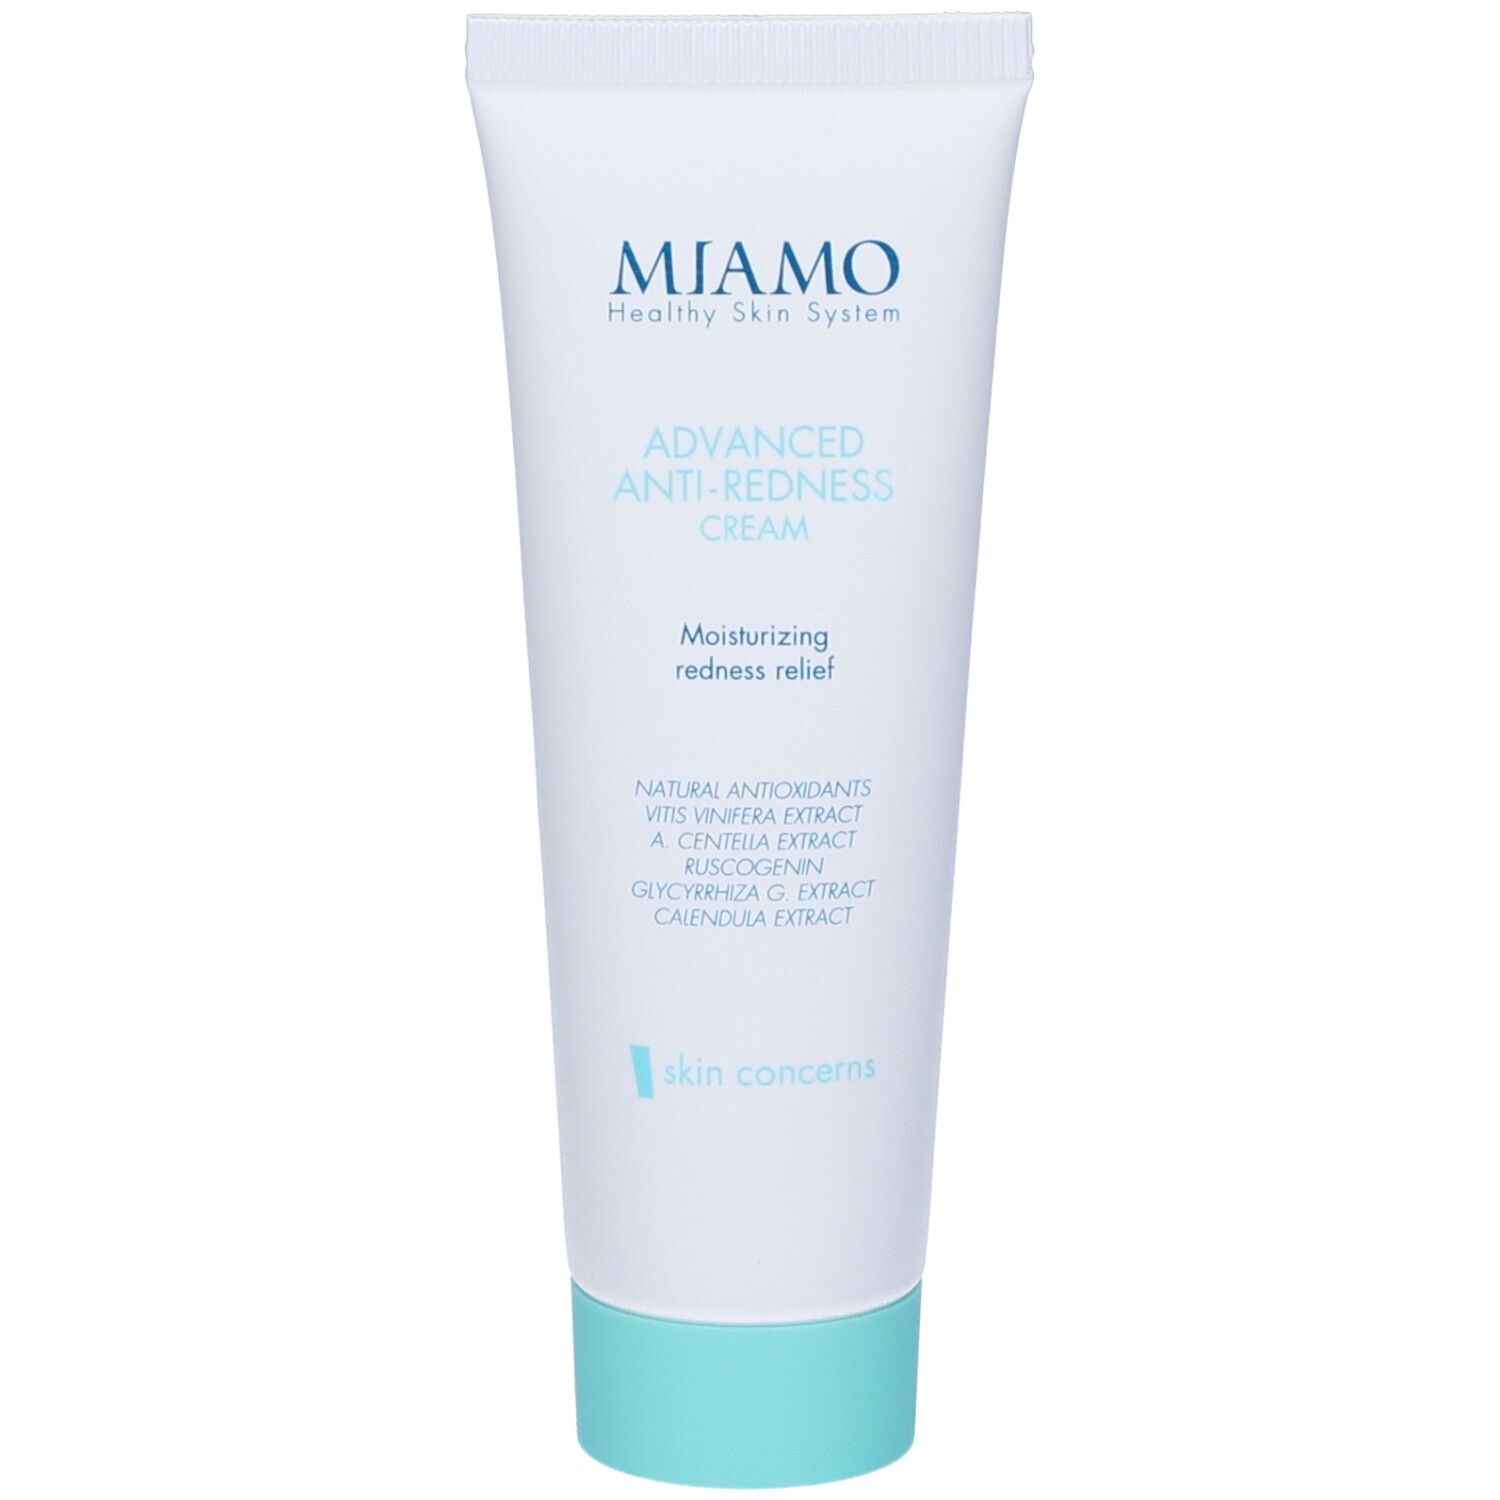 Miamo Skin Concerns Advanced Anti Redness Cream